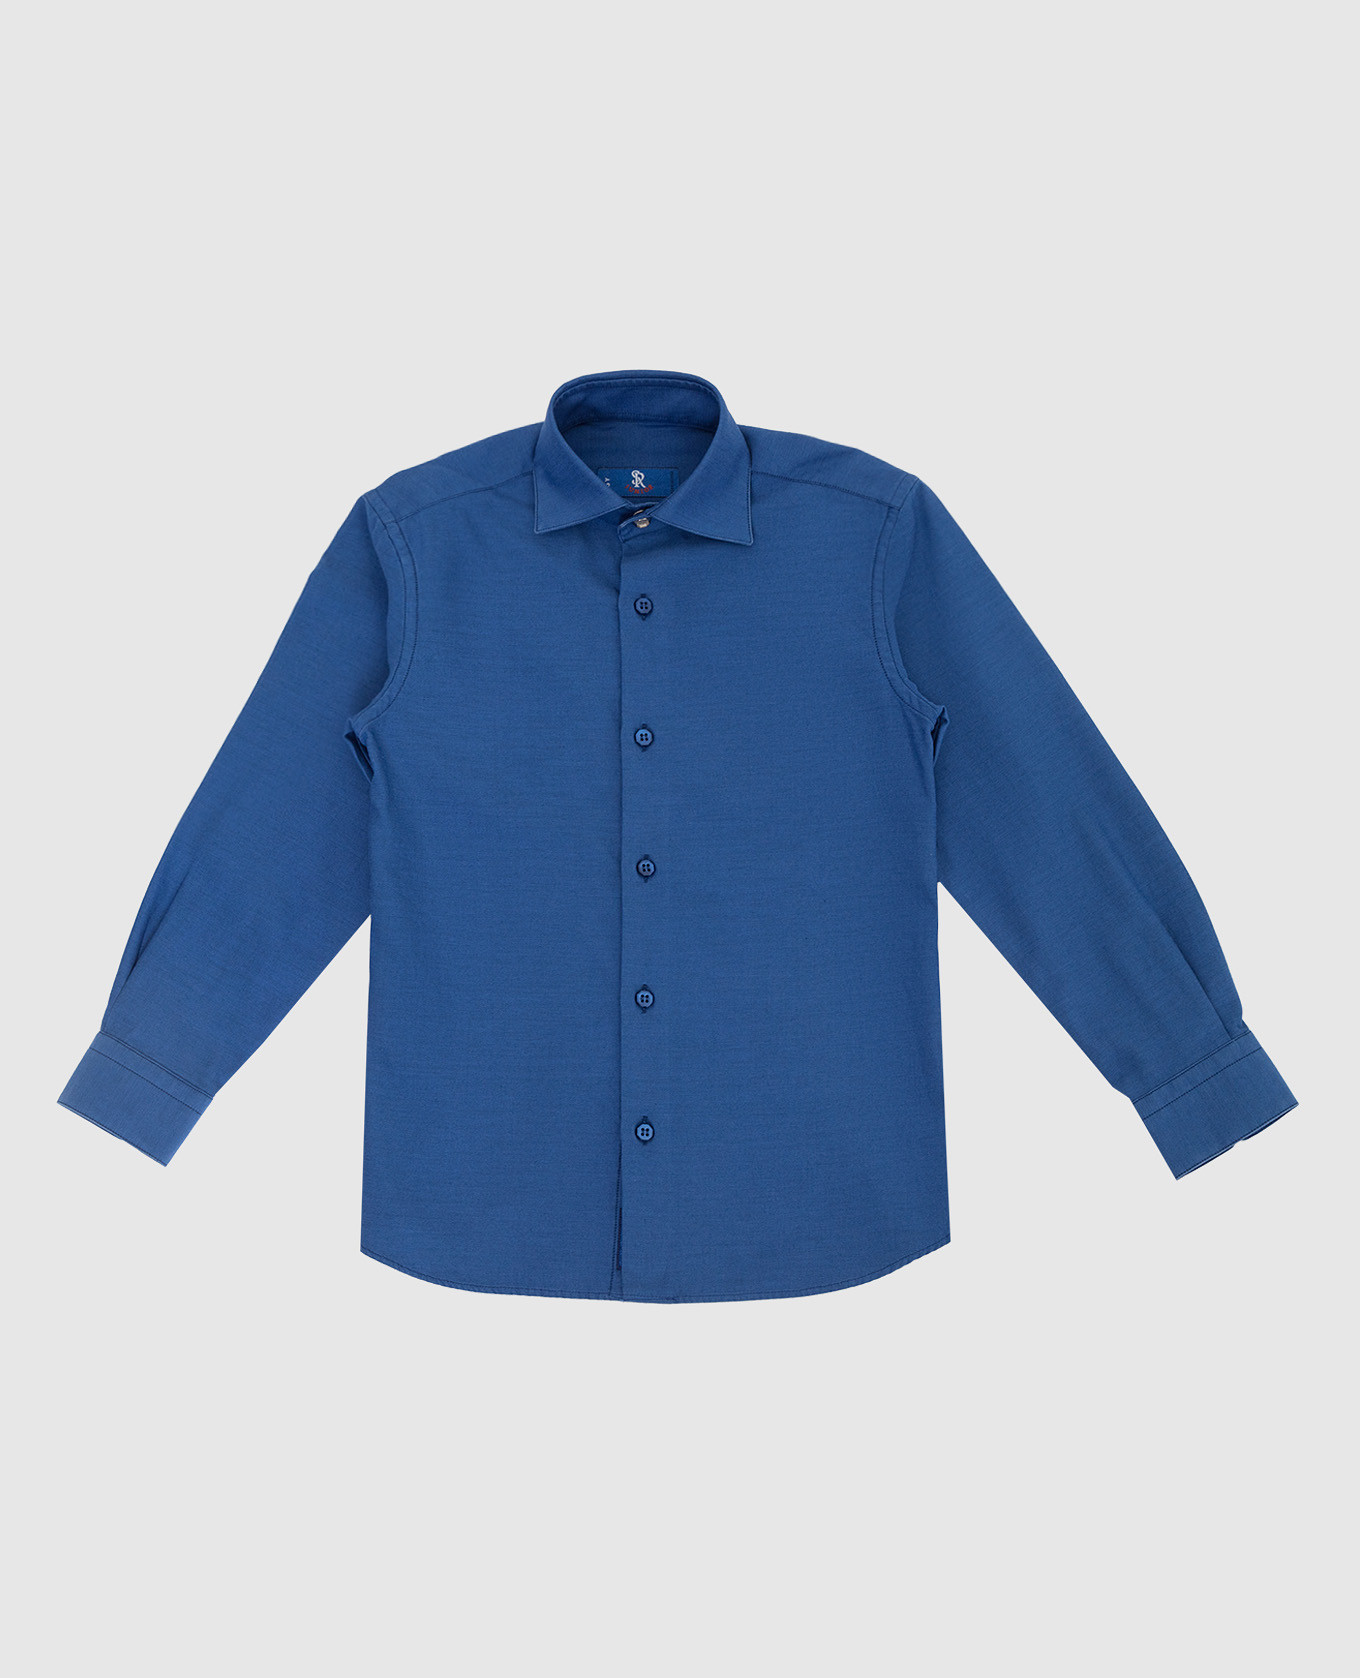 Children's blue shirt